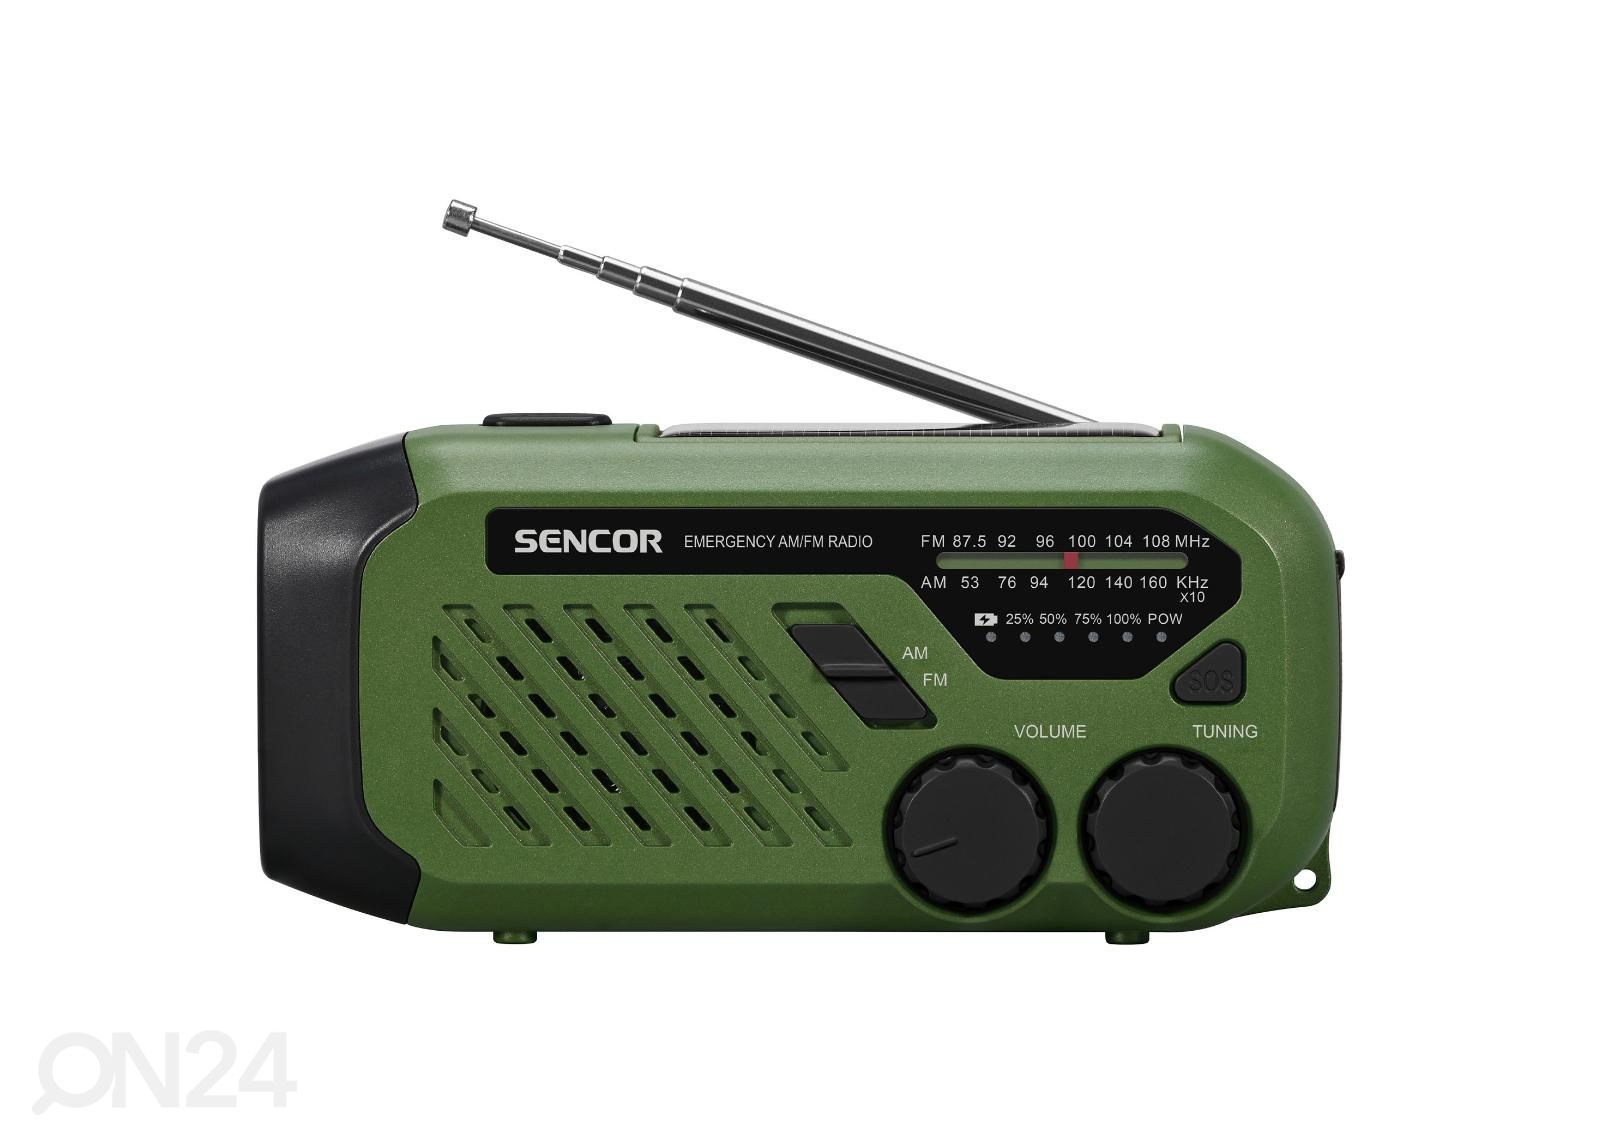 Radio Sencor aurinkokennolla ja dynamolla kuvasuurennos